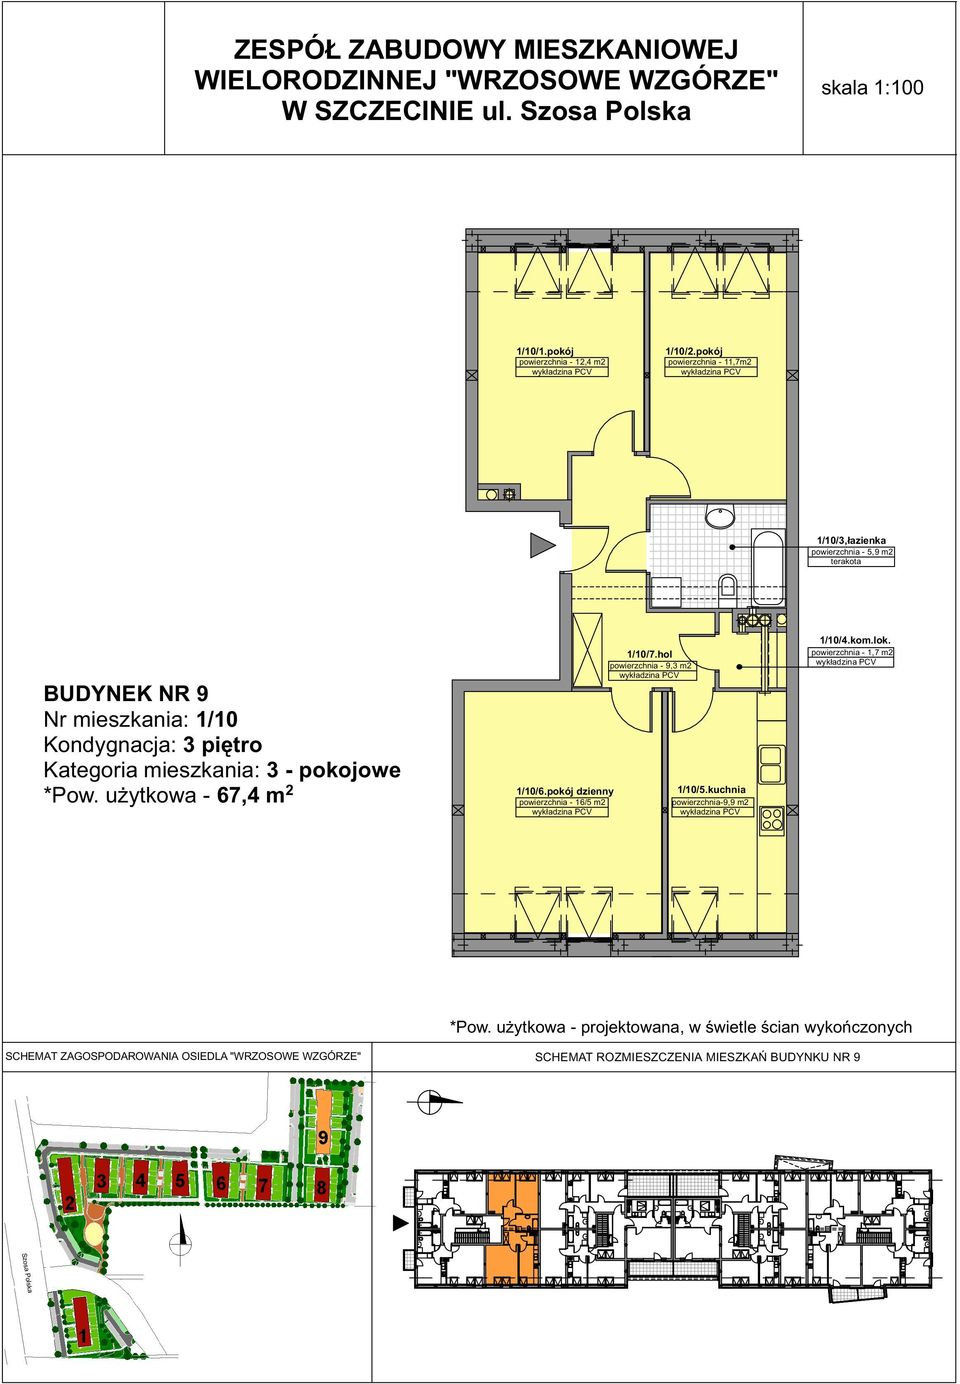 mieszkania: 3 - pokojowe 1/10/7.hol powierzchnia - 9,3 m2 1/10/6.pokój dzienny 1/10/5.kuchnia *Pow.